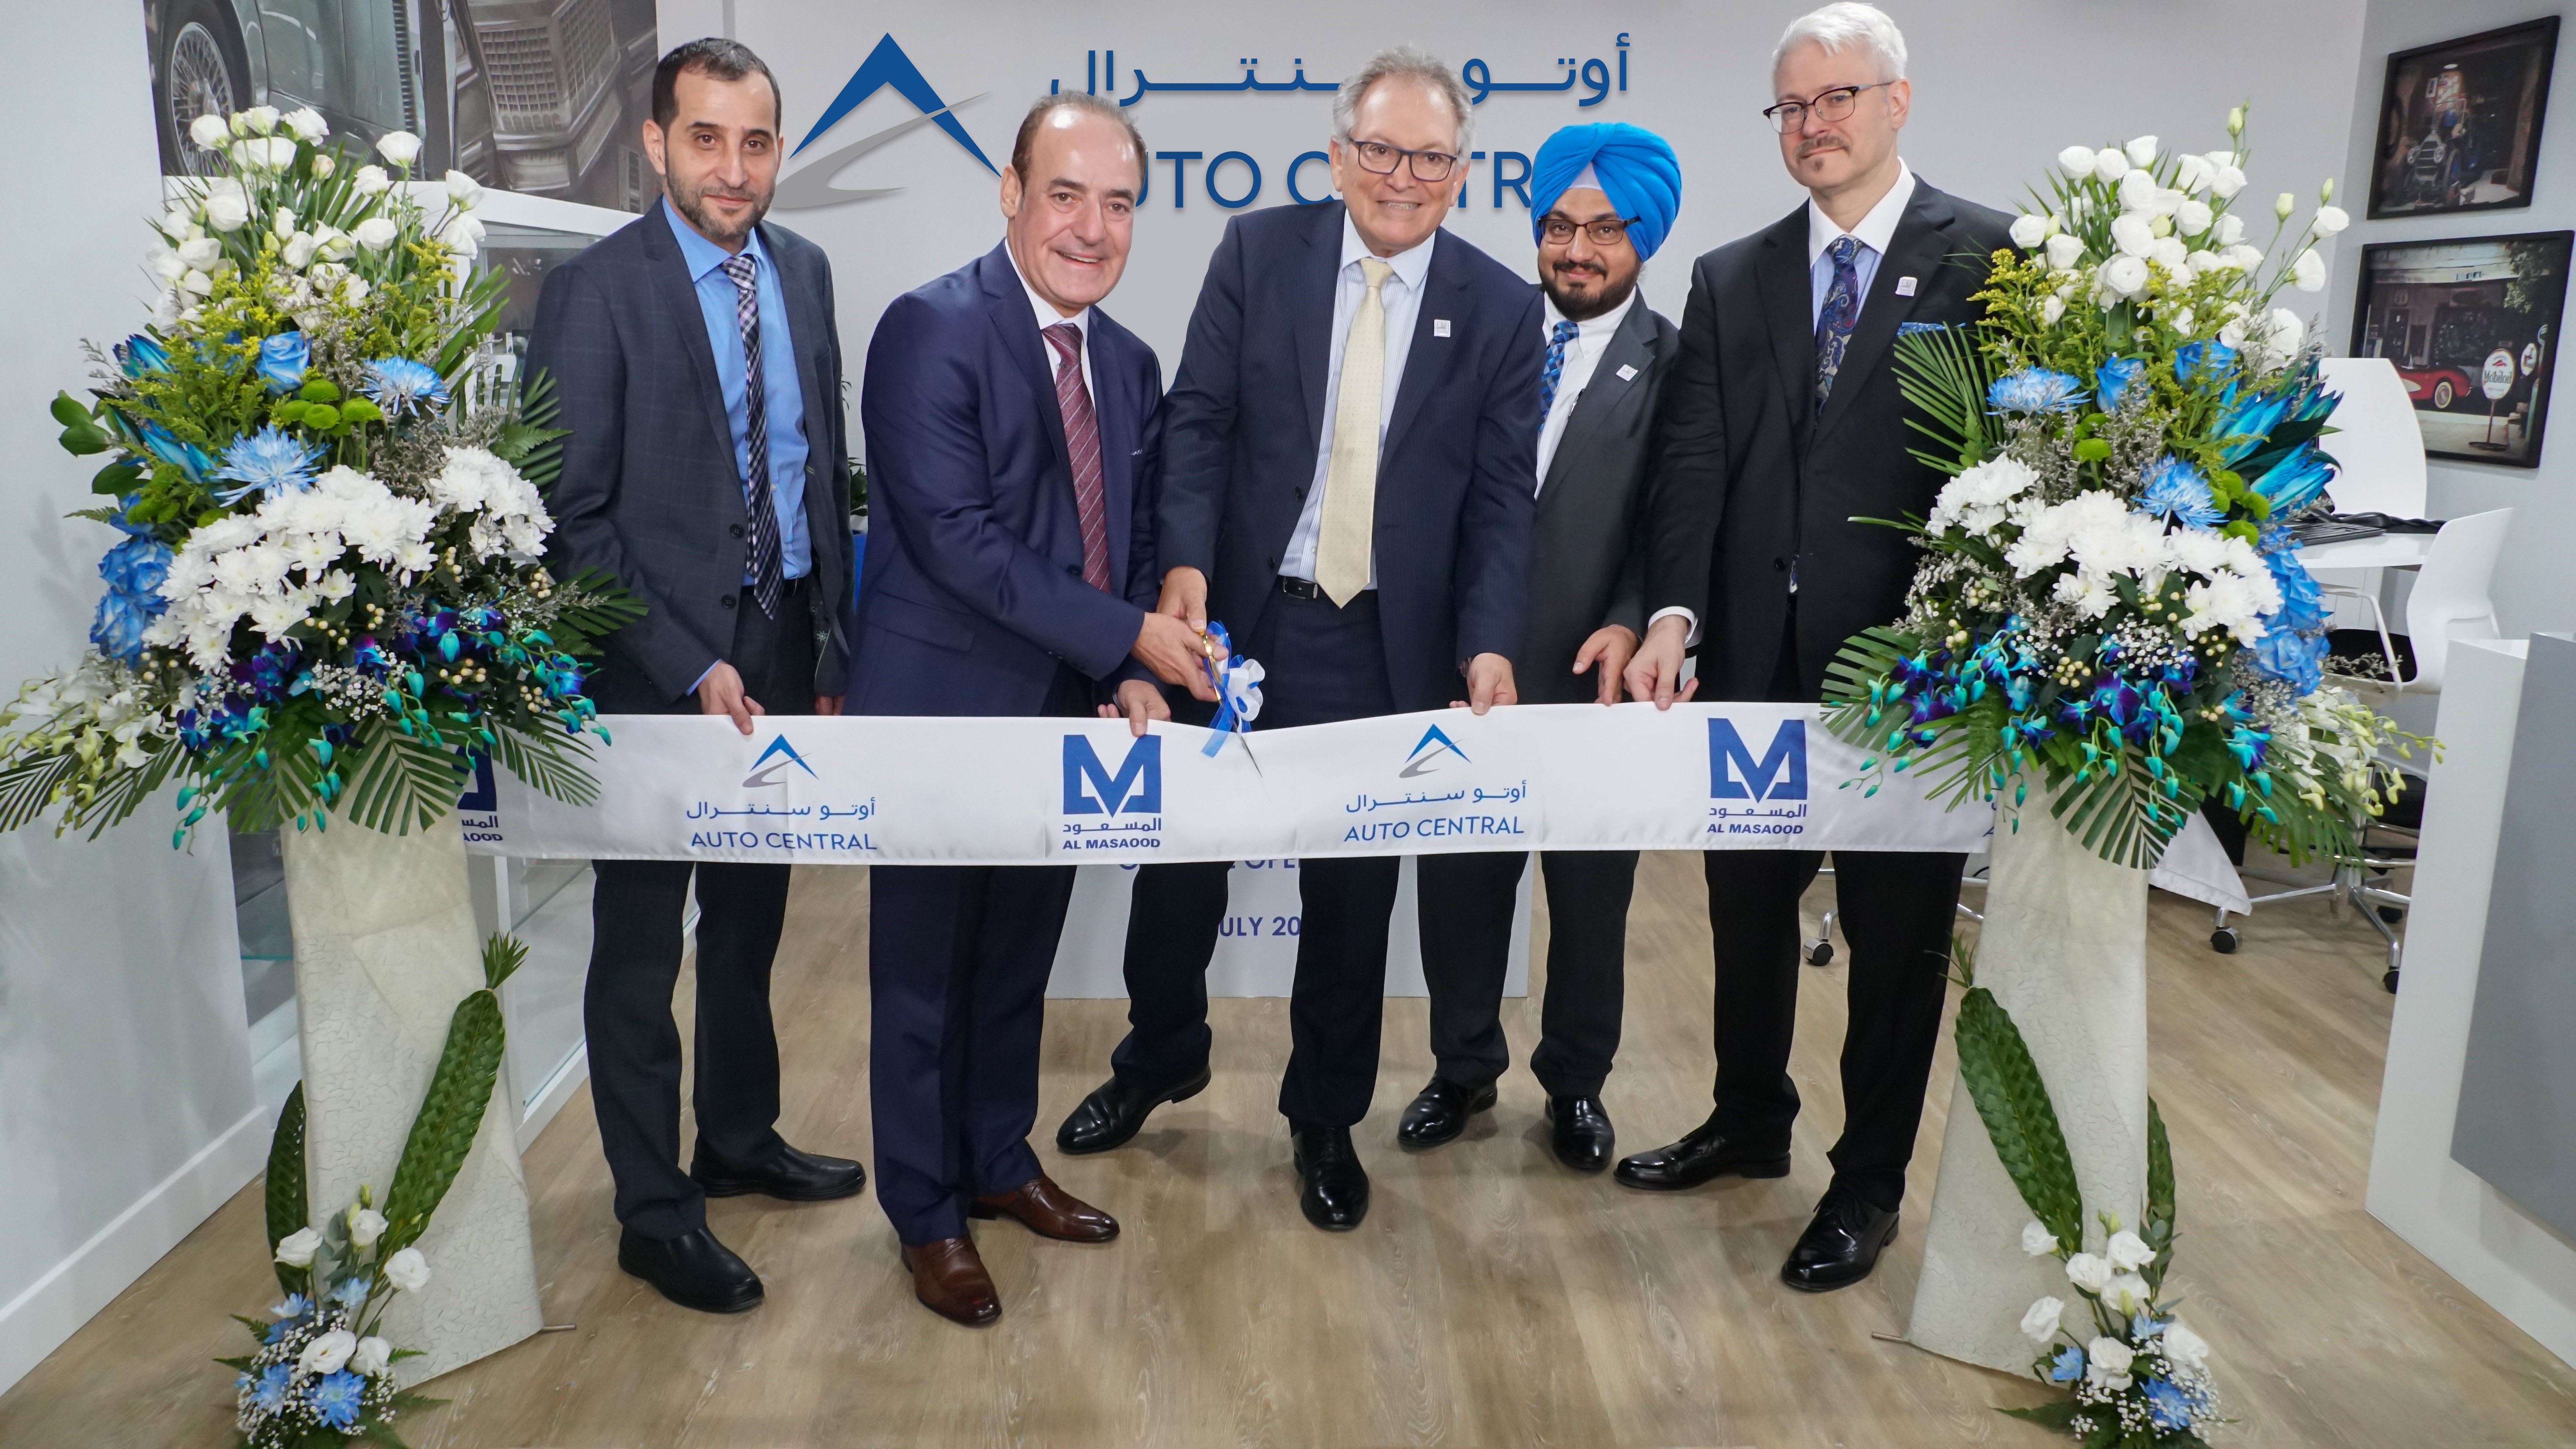 Al Masaood Launches new ‘Auto Central’ Multi-Brand service network